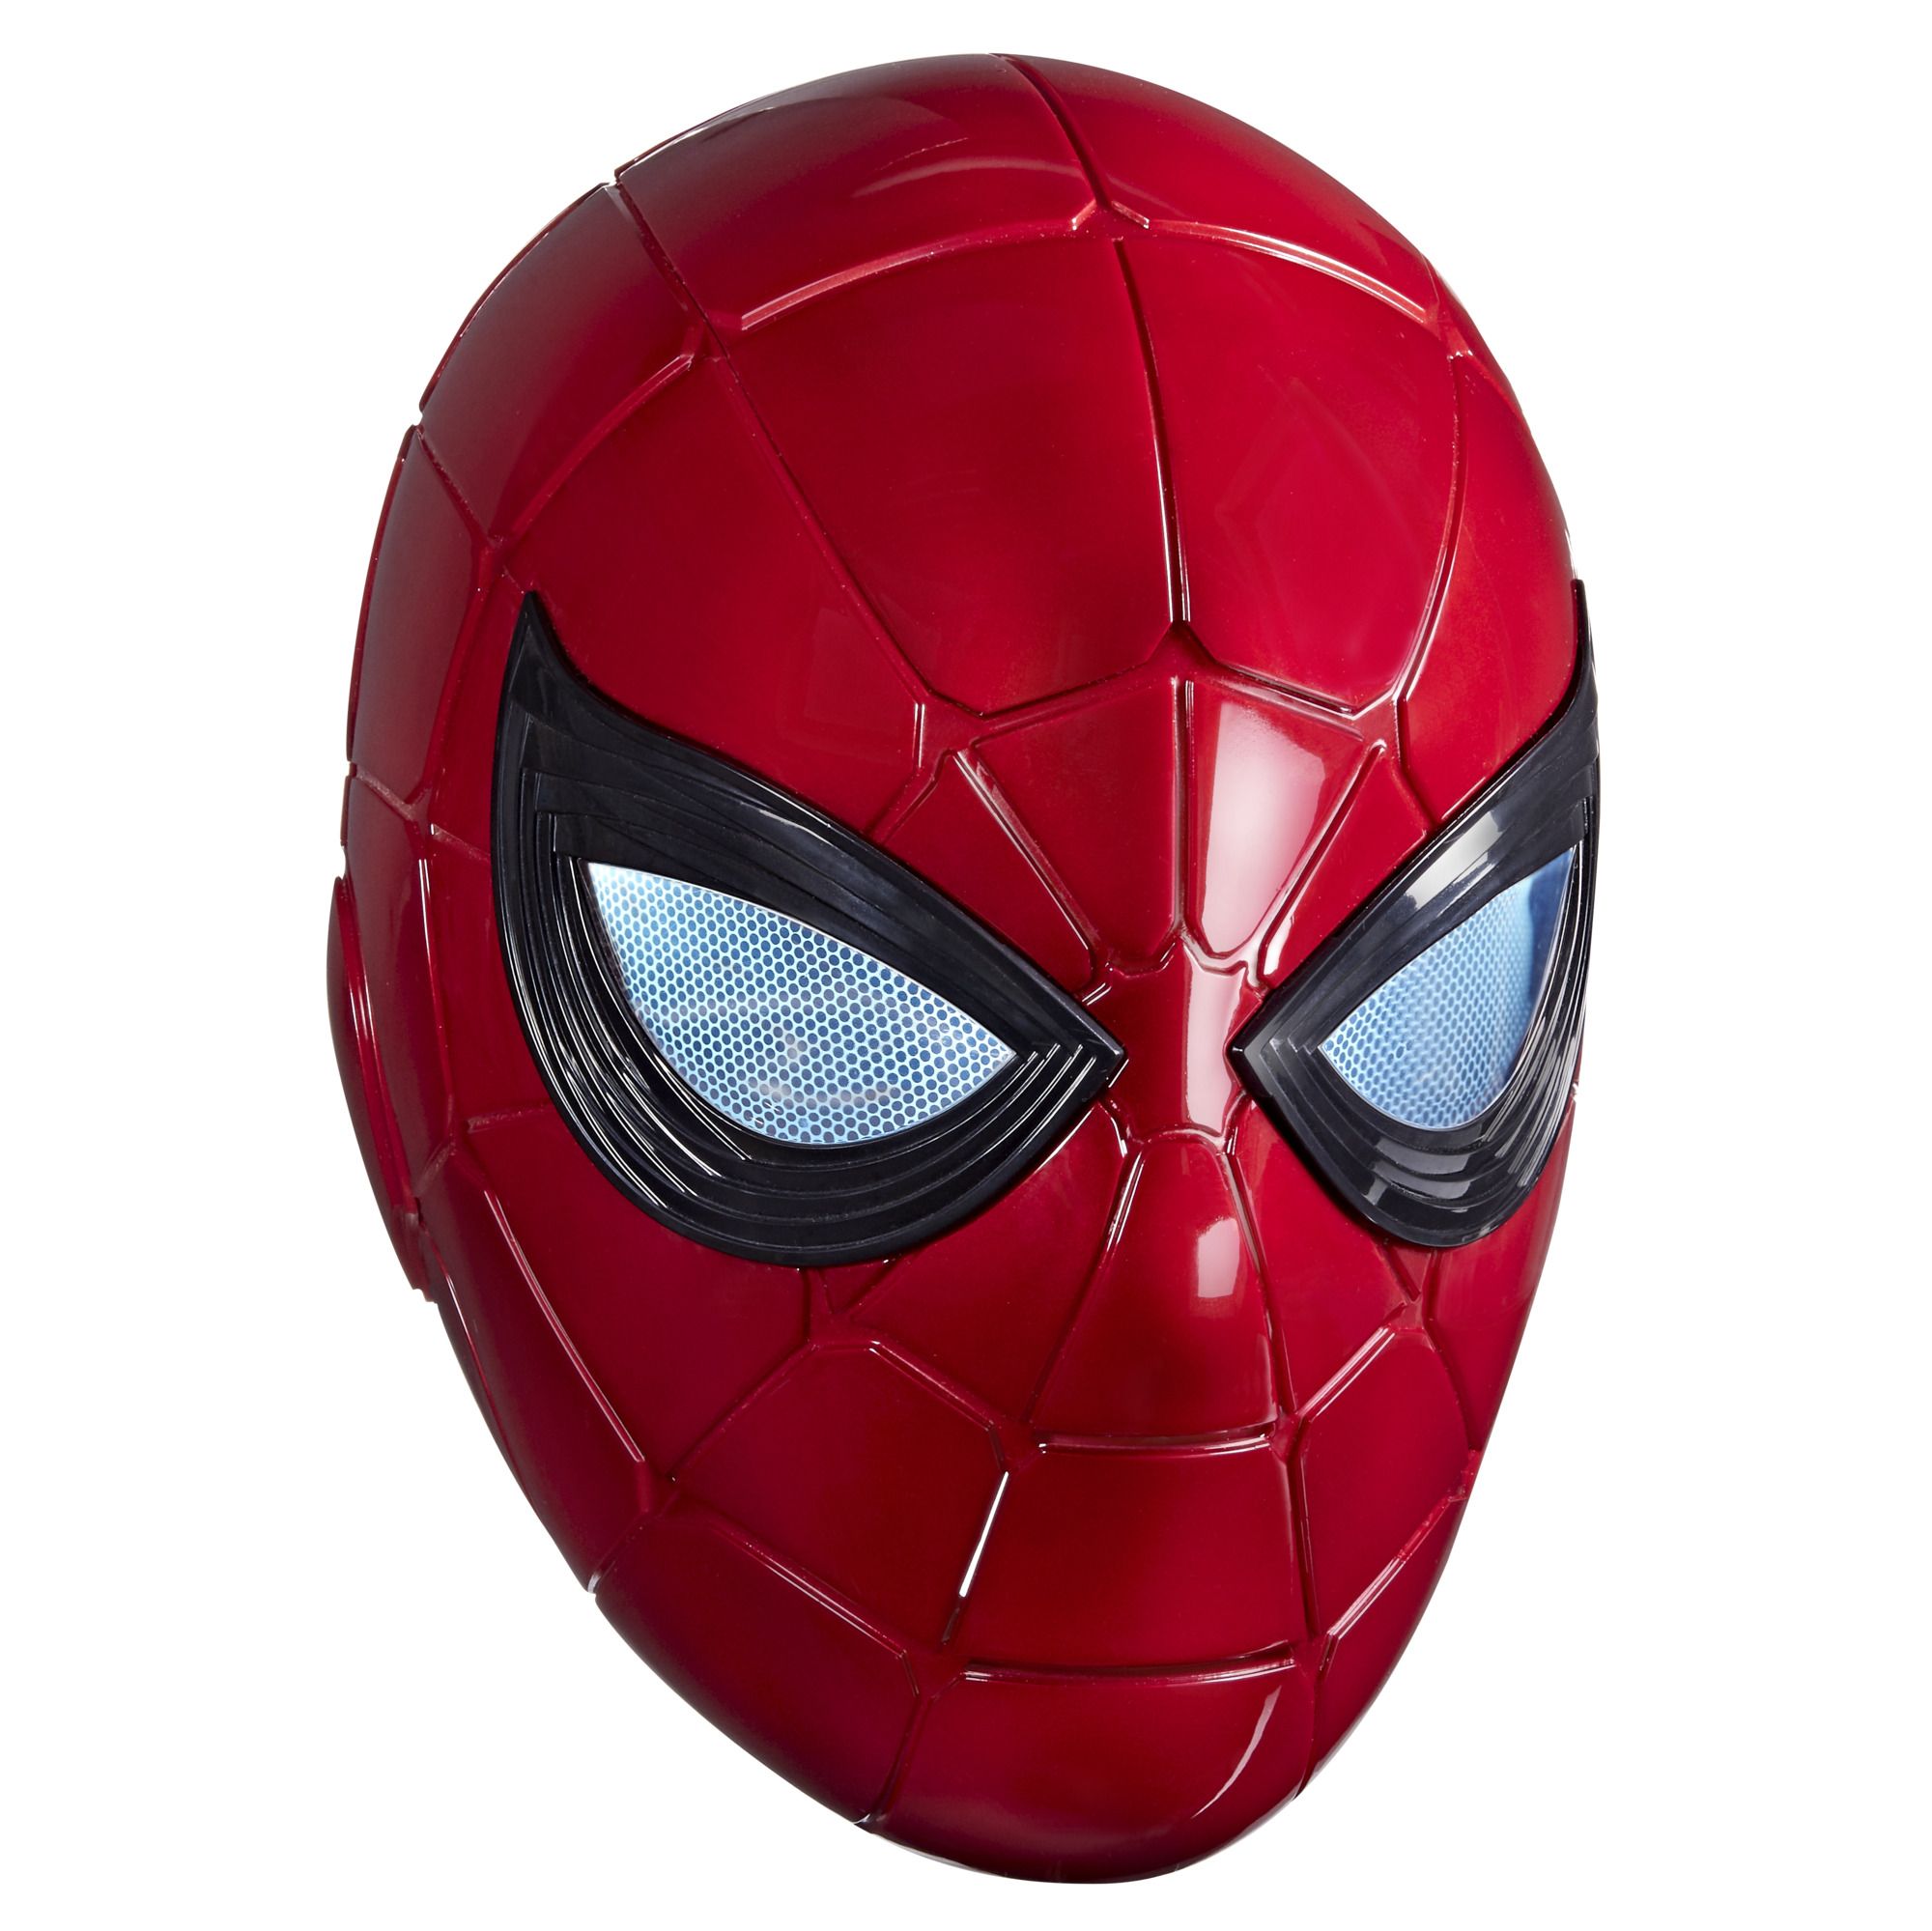 Marvel Spider-Man Super Web Slinger, 2-In-1 Shoots India | Ubuy